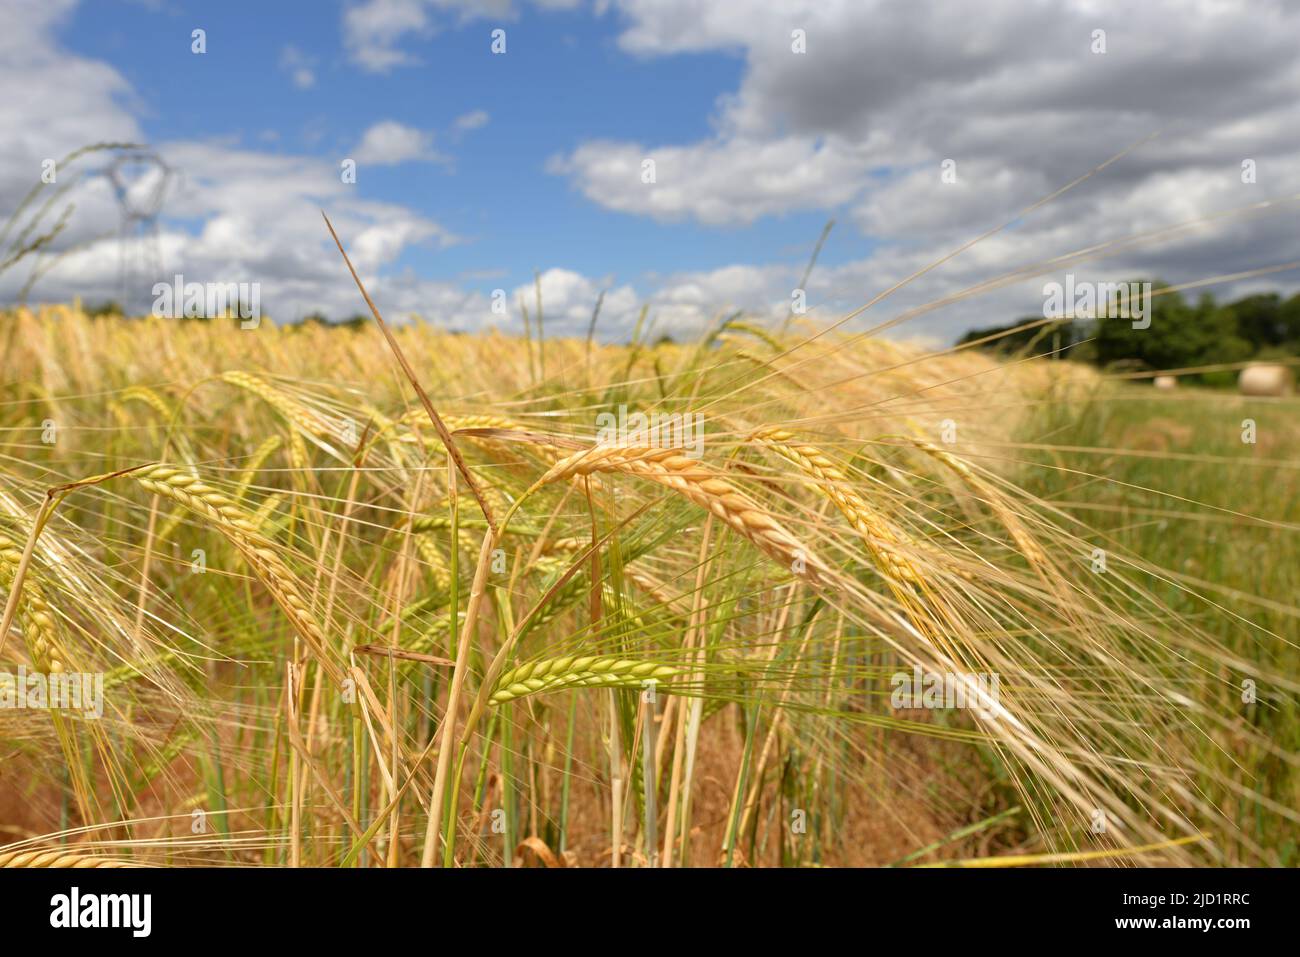 Ein Weizenfeld unter einem stürmischen Himmel. Höhere Getreidekosten. Mangel an Weizen in der Welt wegen des Krieges in der Ukraine und der Hitzewelle Stockfoto